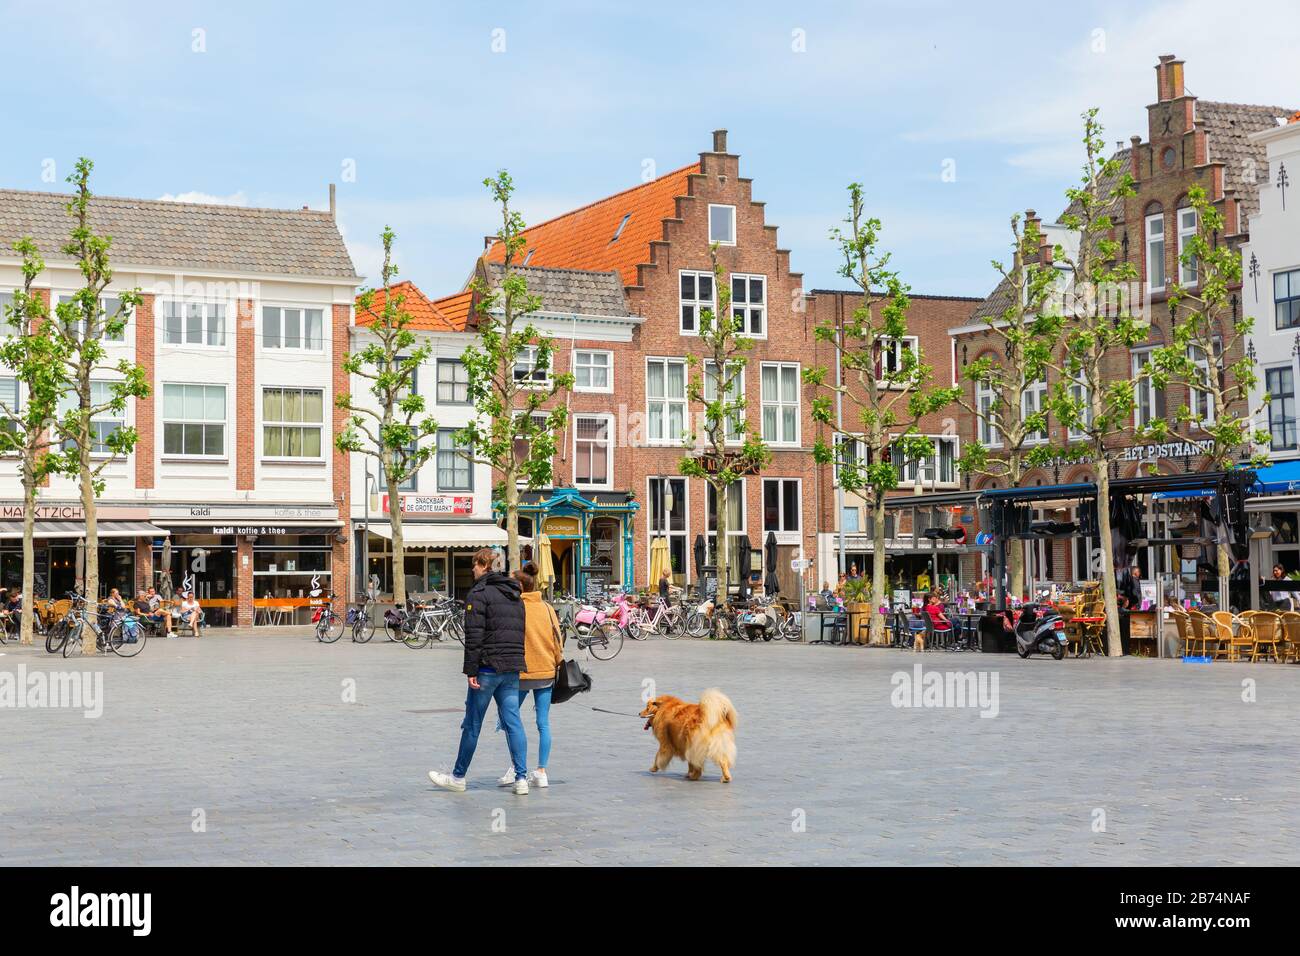 Va, Pays-Bas - 09 juin 2019 : square dans le centre-ville de va, avec des personnes non identifiées. Le centre-ville de Va est riche de pittoresque vieille hous Banque D'Images